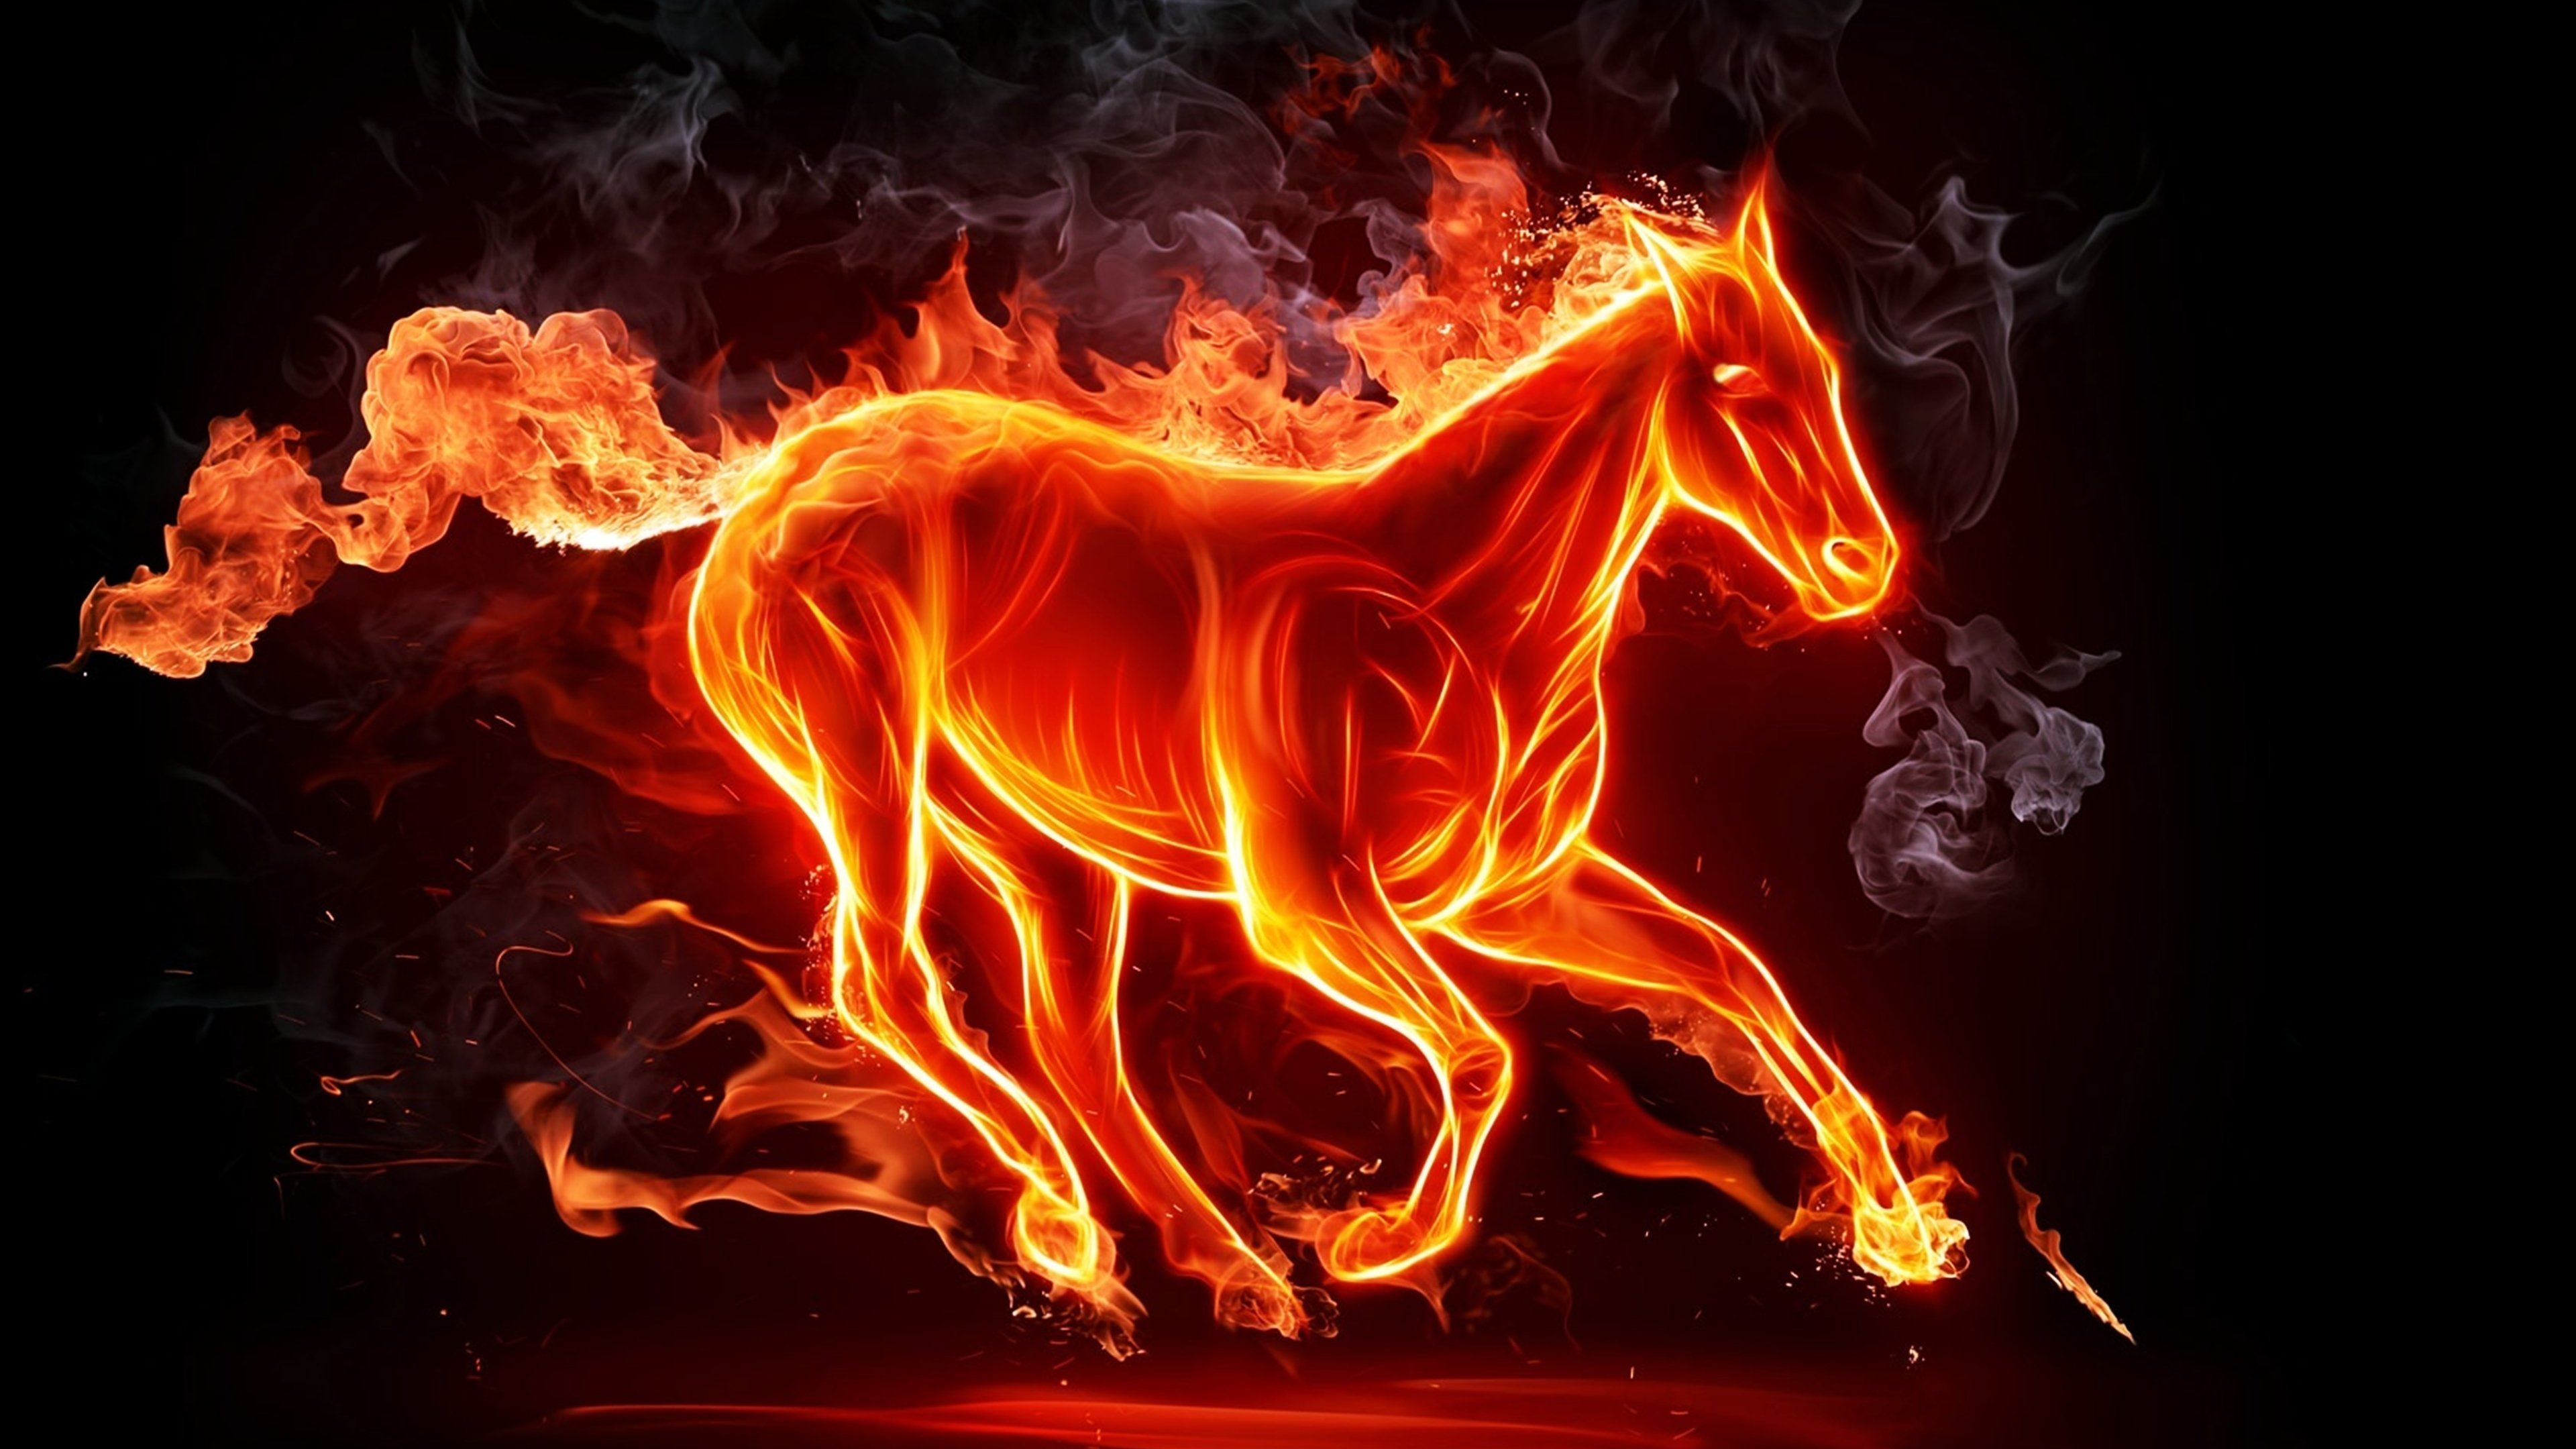 fiery horse 4k 1540750955 - Fiery Horse 4k - horse wallpapers, hd-wallpapers, flame wallpapers, digital art wallpapers, artwork wallpapers, artist wallpapers, abstract wallpapers, 4k-wallpapers